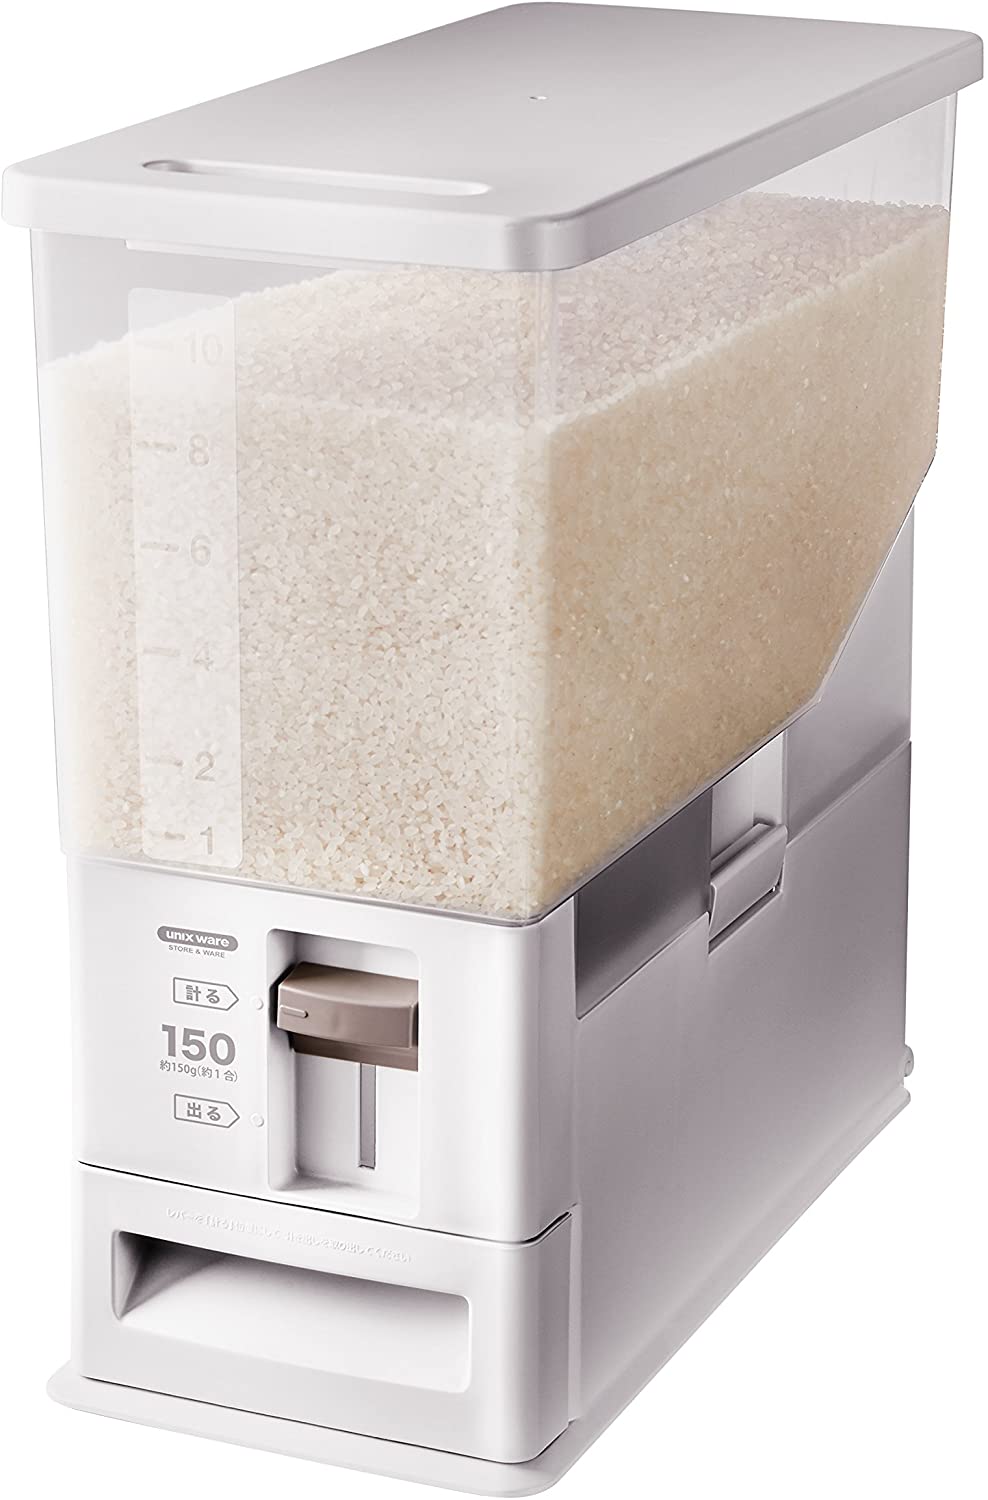 市場 計量 おしゃれ お米 密閉米びつ 米びつ ライスボックス 保存容器 10kg こめびつ 計量米びつ 洗える 大容量 無洗米 鮮度を保ち 米入れ  米櫃